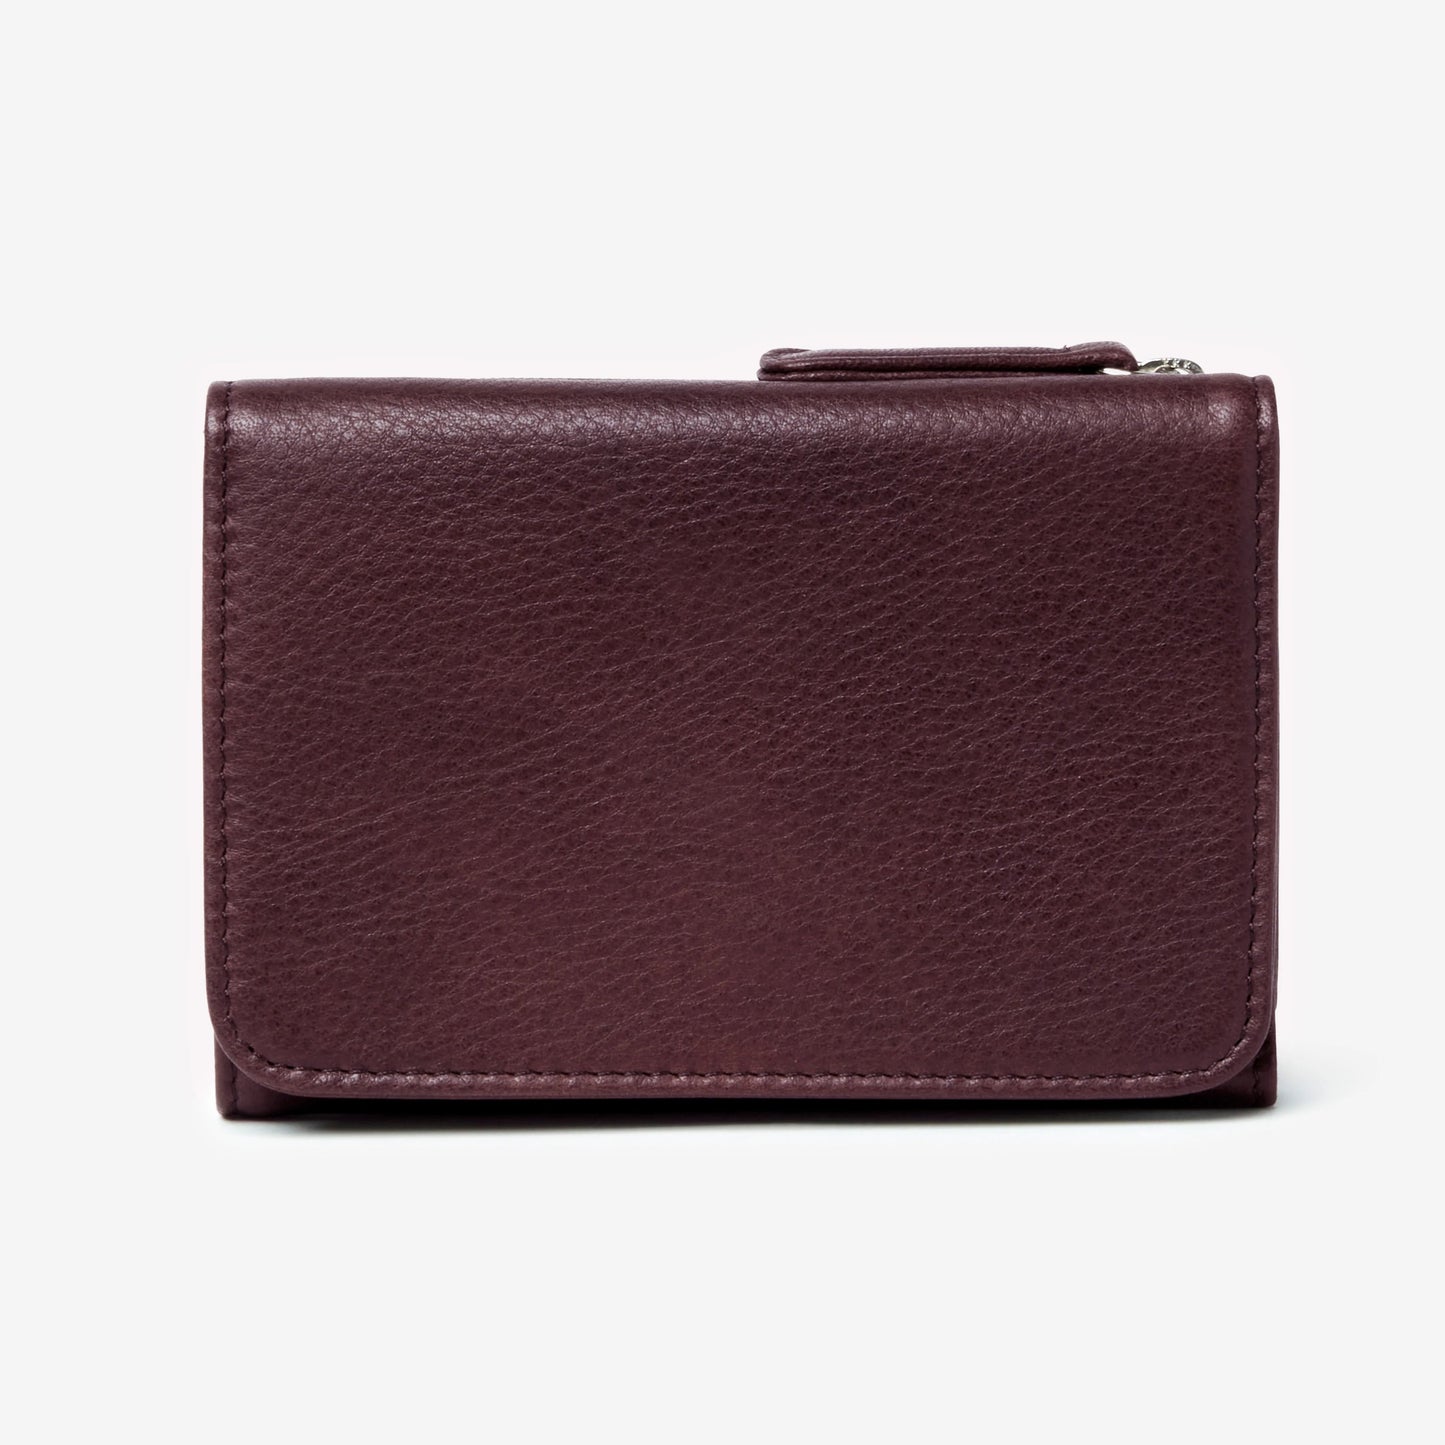 RFID Snap Wallet | Mullberry - Wallet - Osgoode Marley